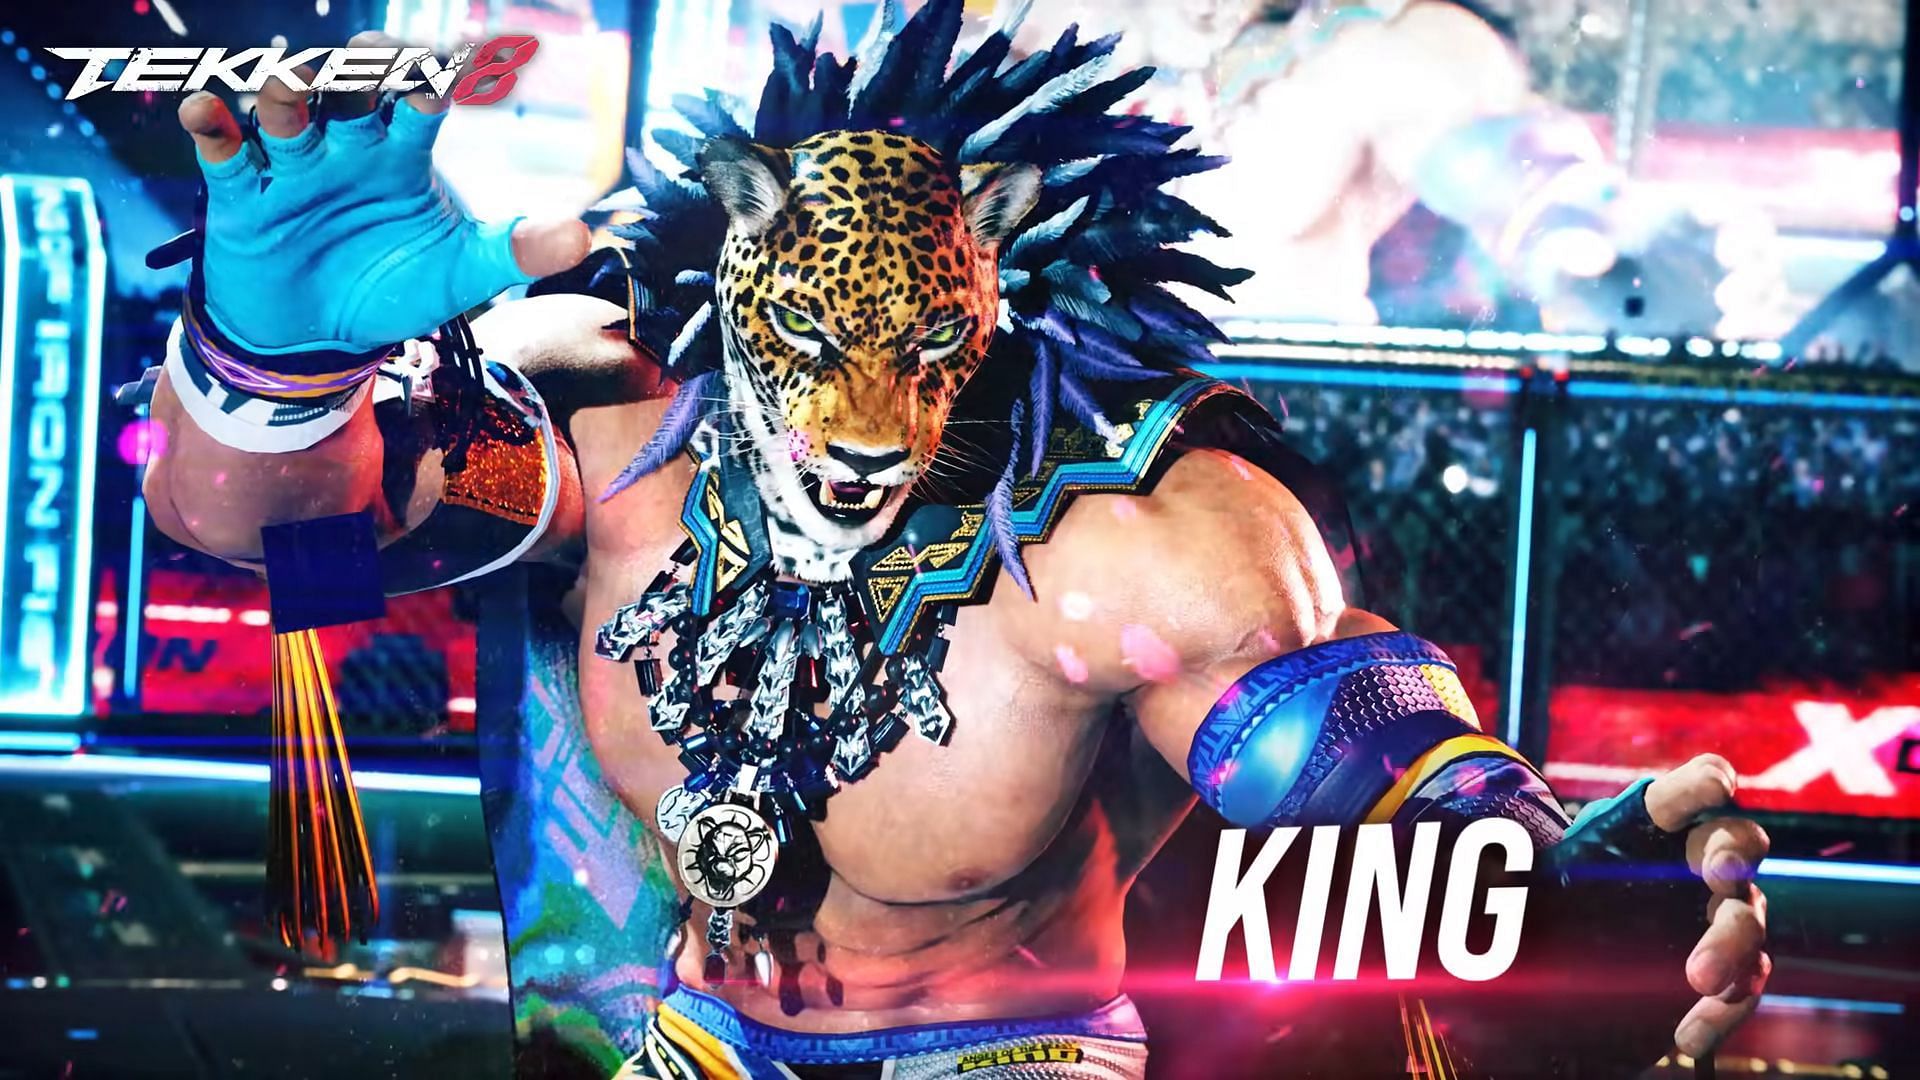 Image of King from Tekken 8